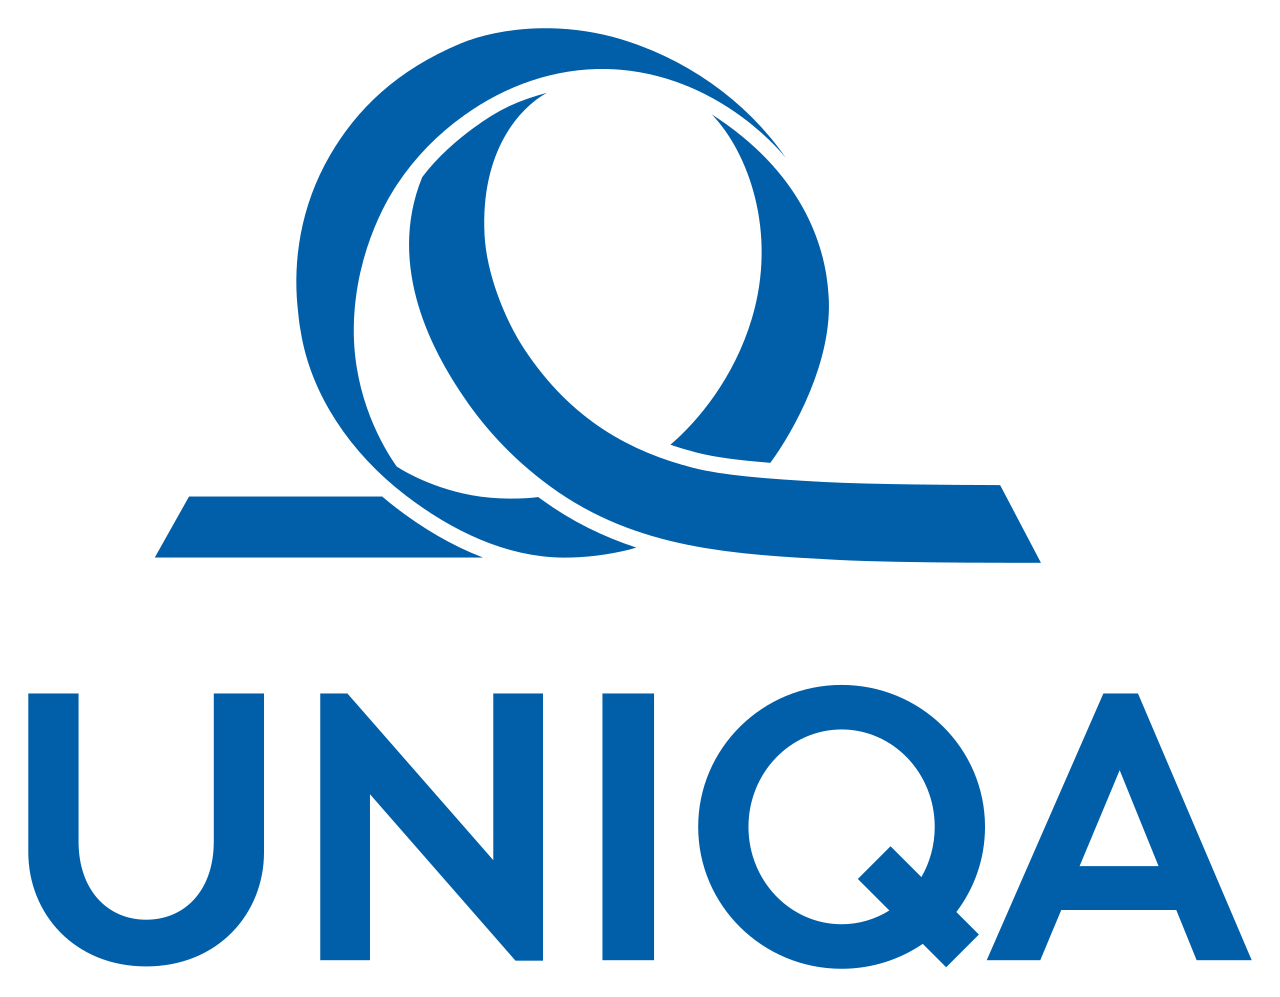 Uniqa osiguranje logo